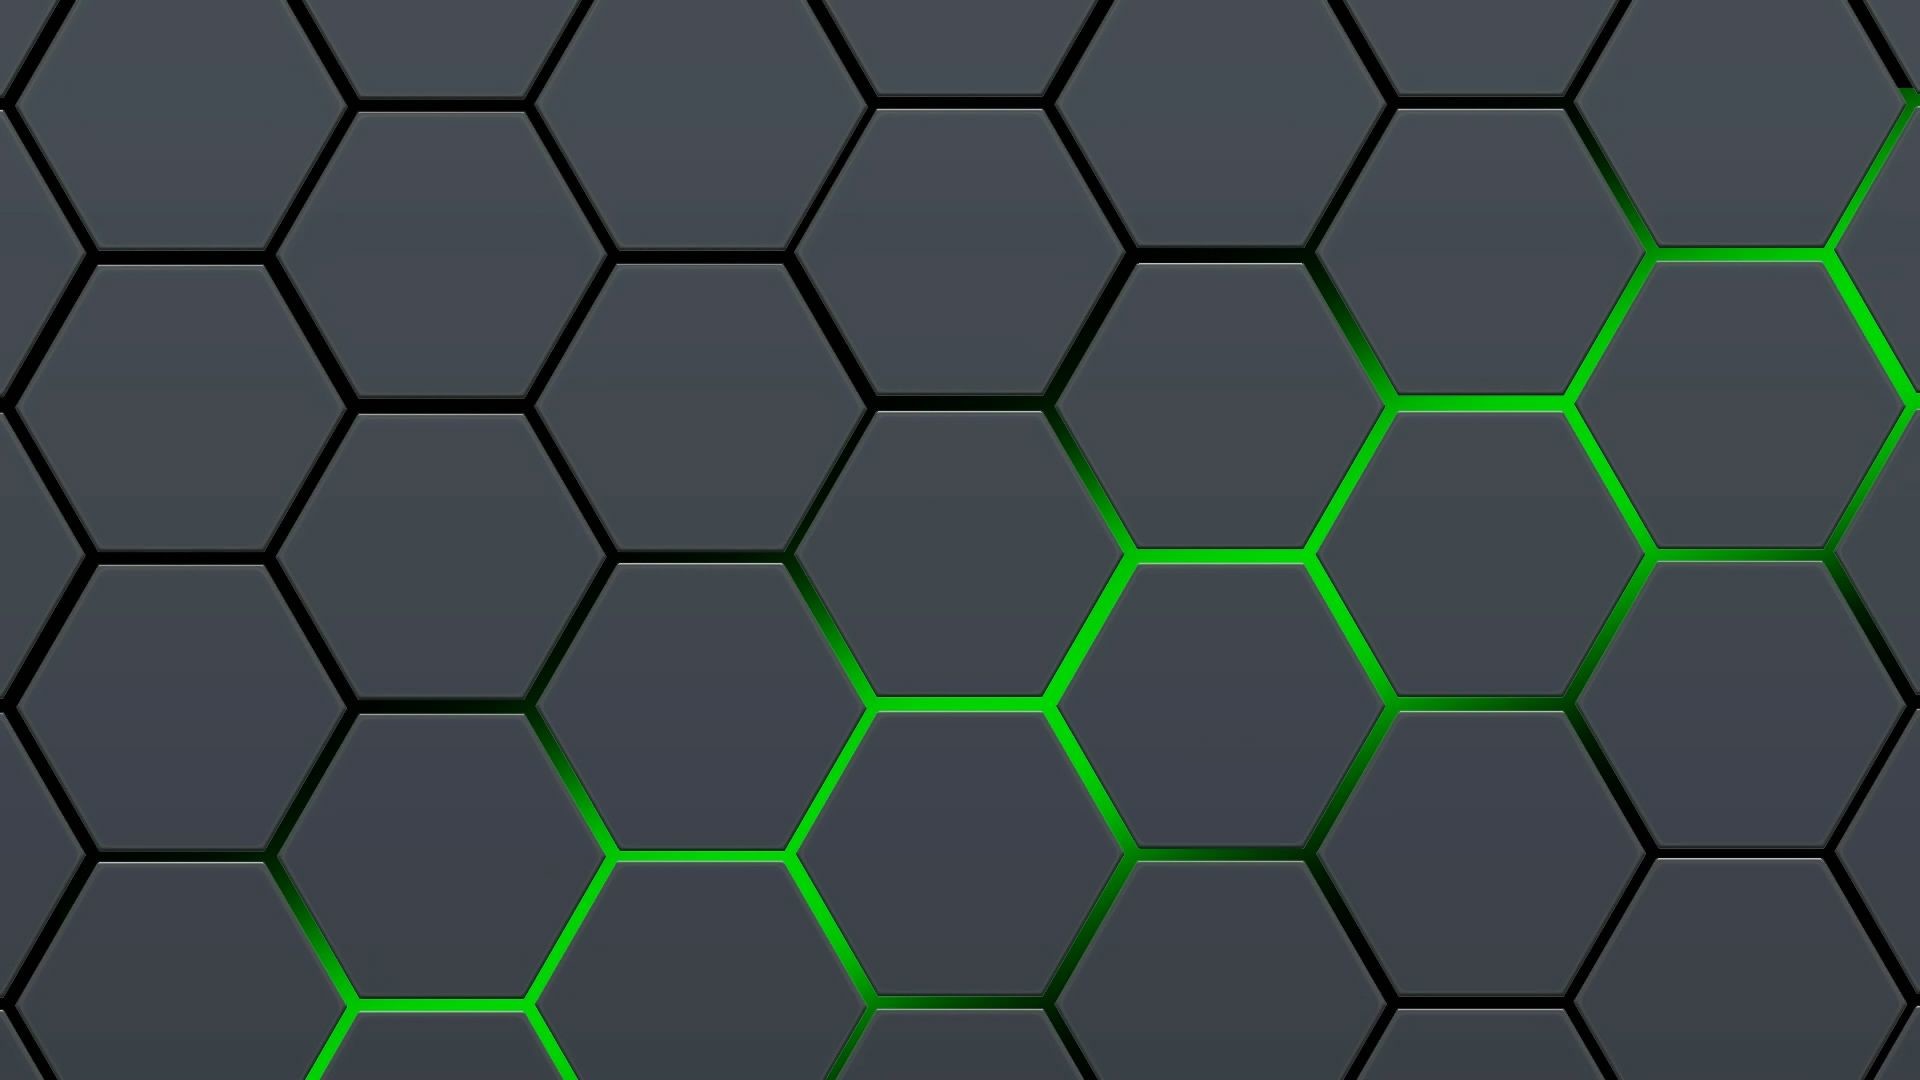 abstract wallpaper hd,green,pattern,net,symmetry,soccer ball